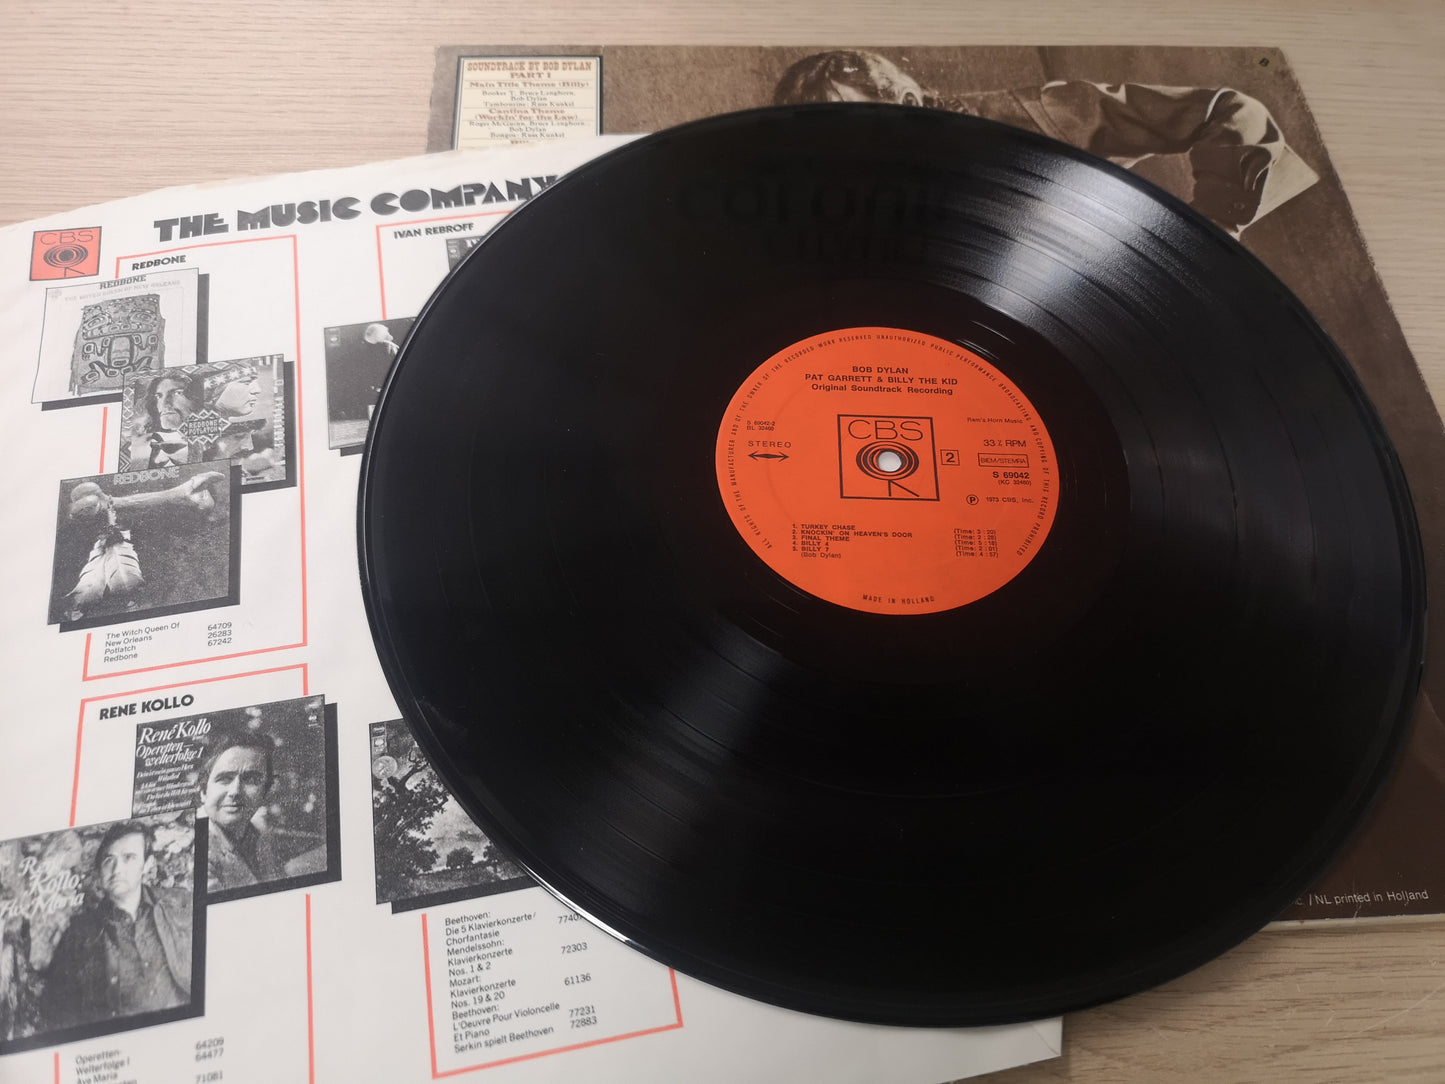 Bob Dylan / Soundtrack "Pat Garrett & Billy the Kid" Orig Holl 1973 VG++/EX